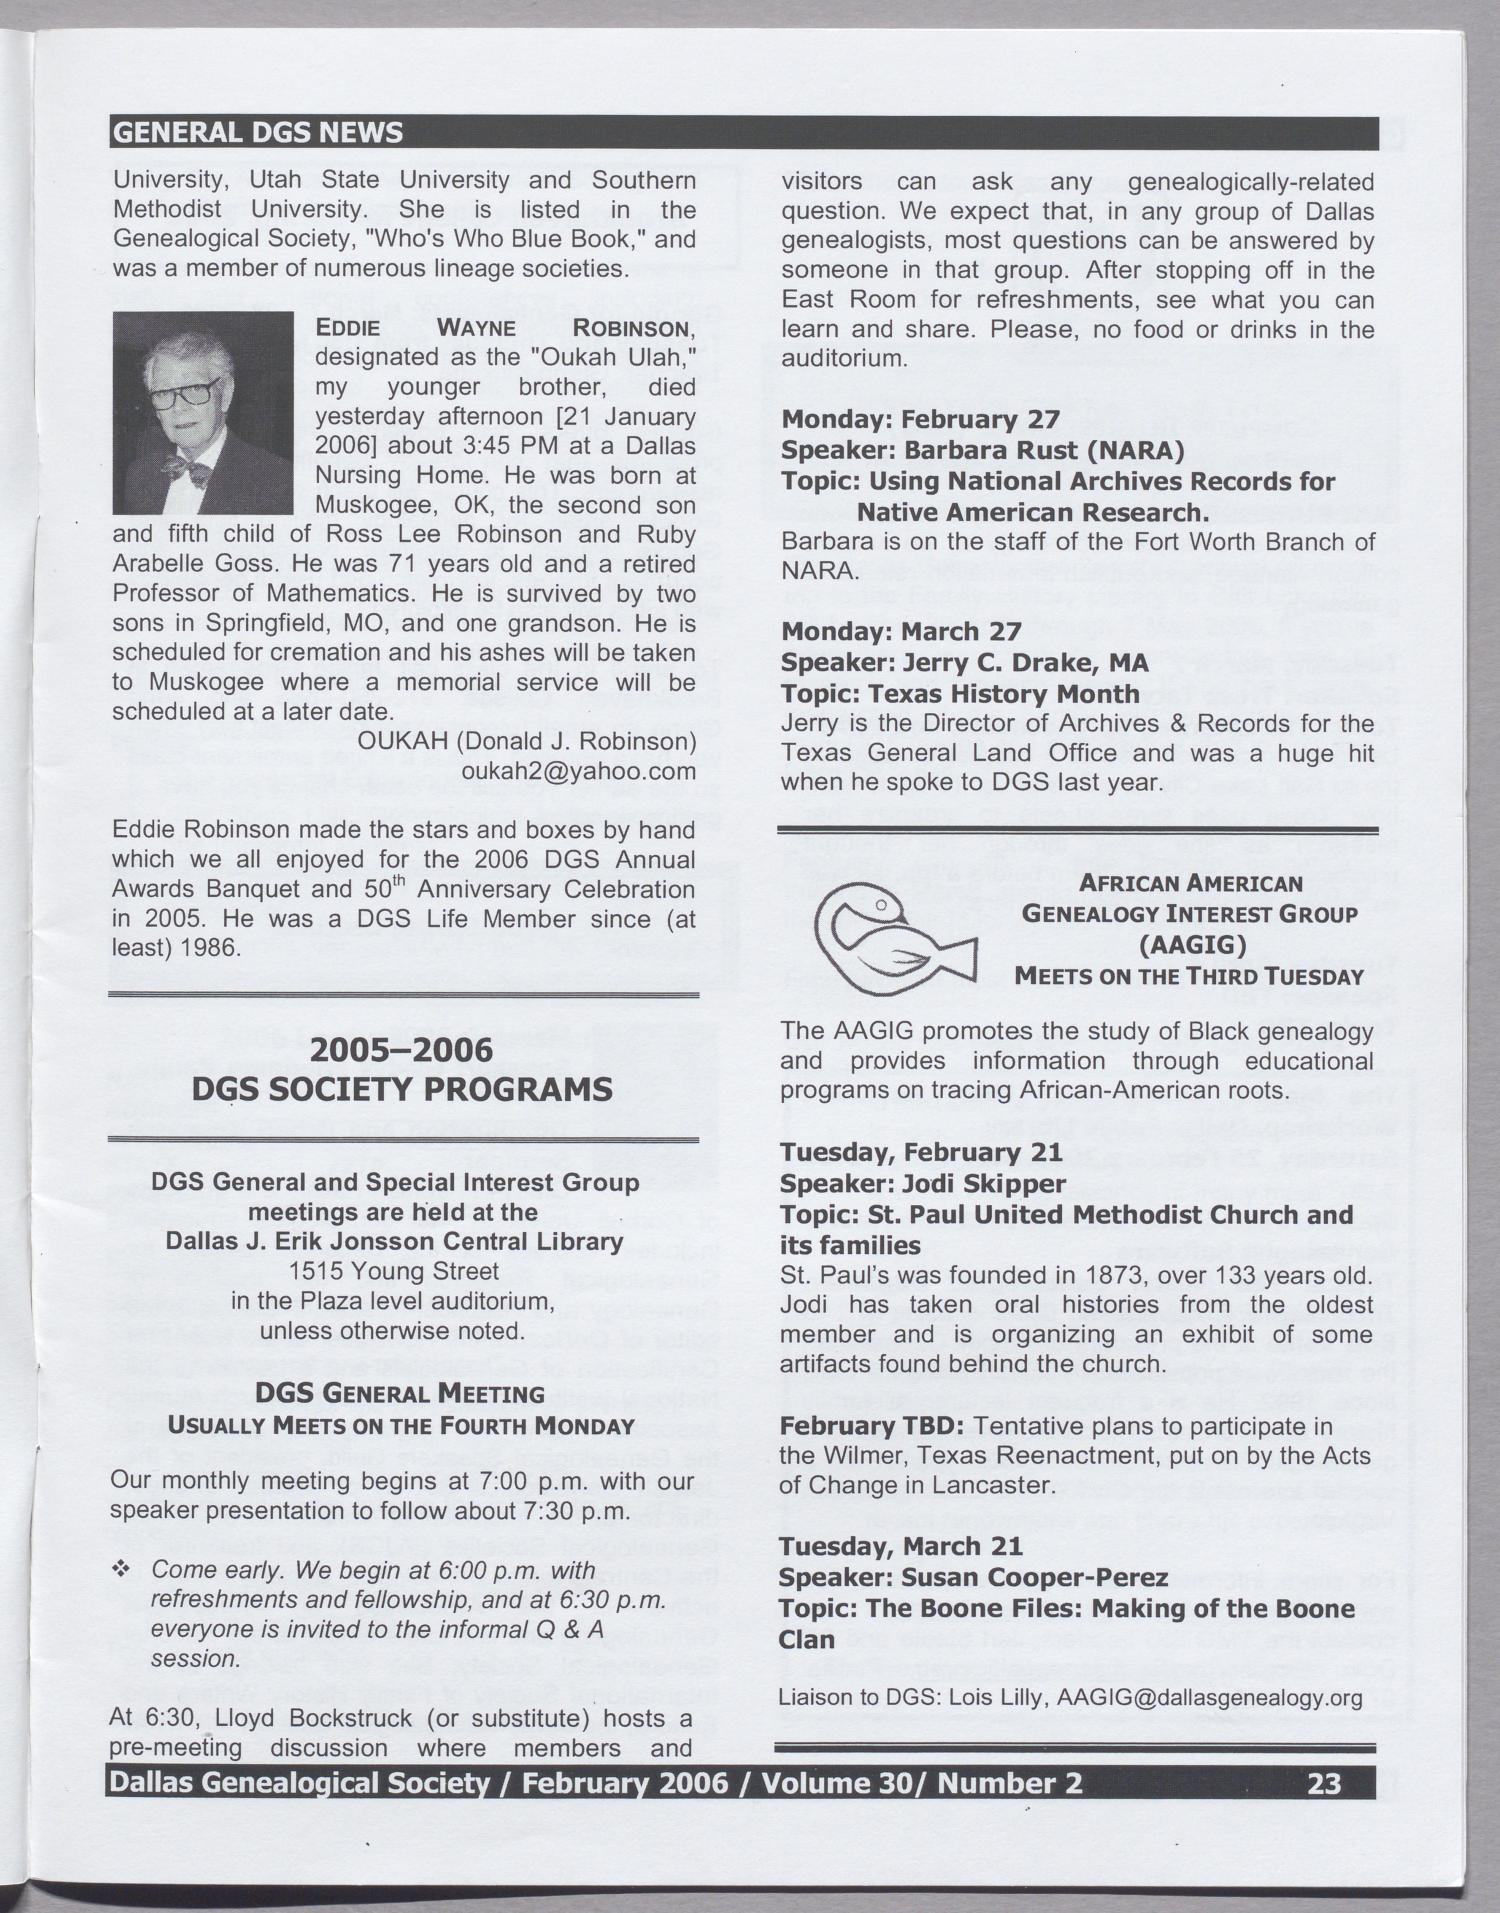 DGS Newsletter, Volume 30, Number 2, February 2003
                                                
                                                    23
                                                